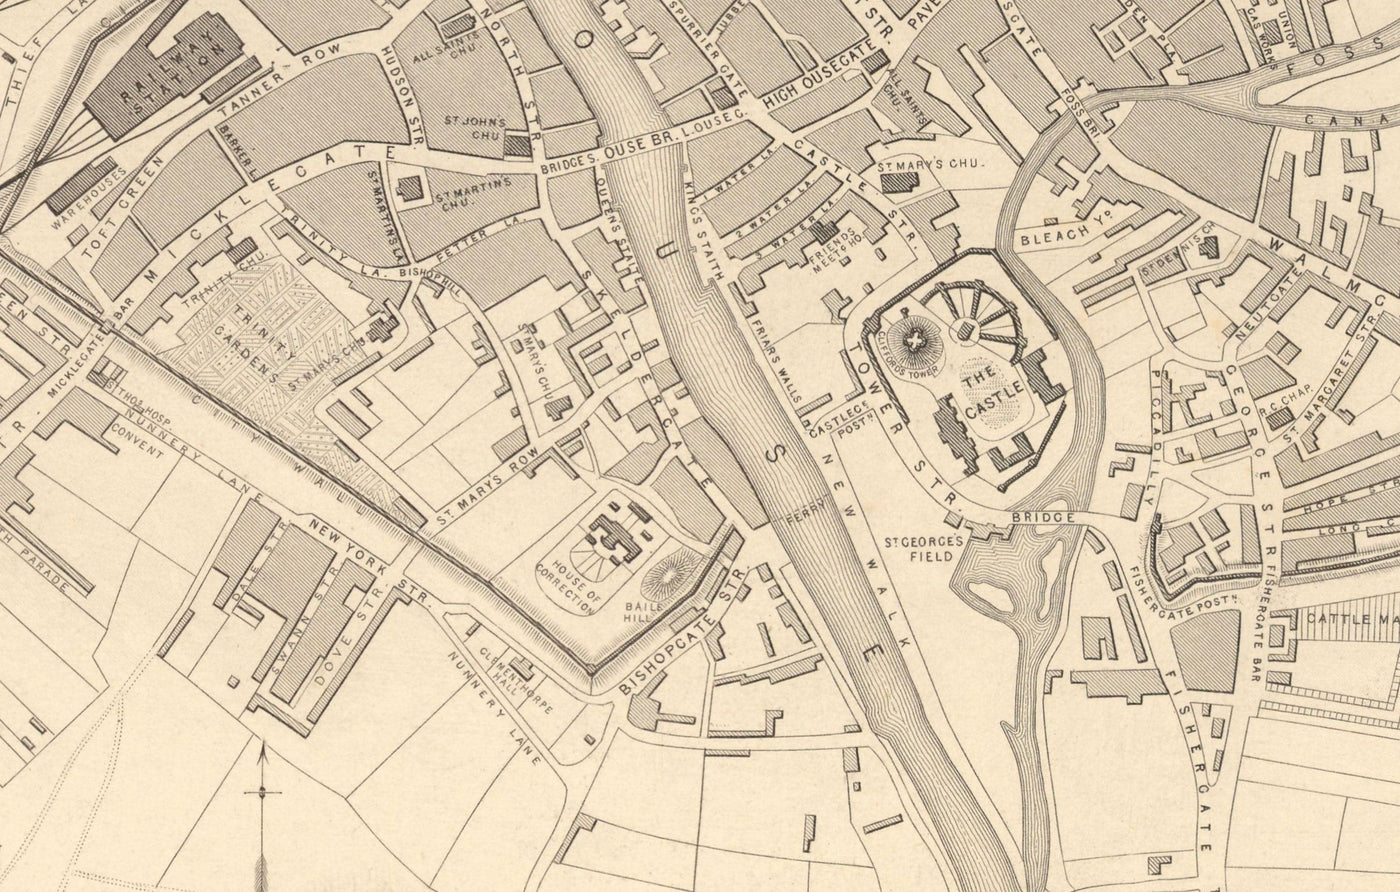 Alte Karte von York 1851 von Tallis & Rapkin - Stadtzentrum Chart, York Minster Cathedral, River Ouse